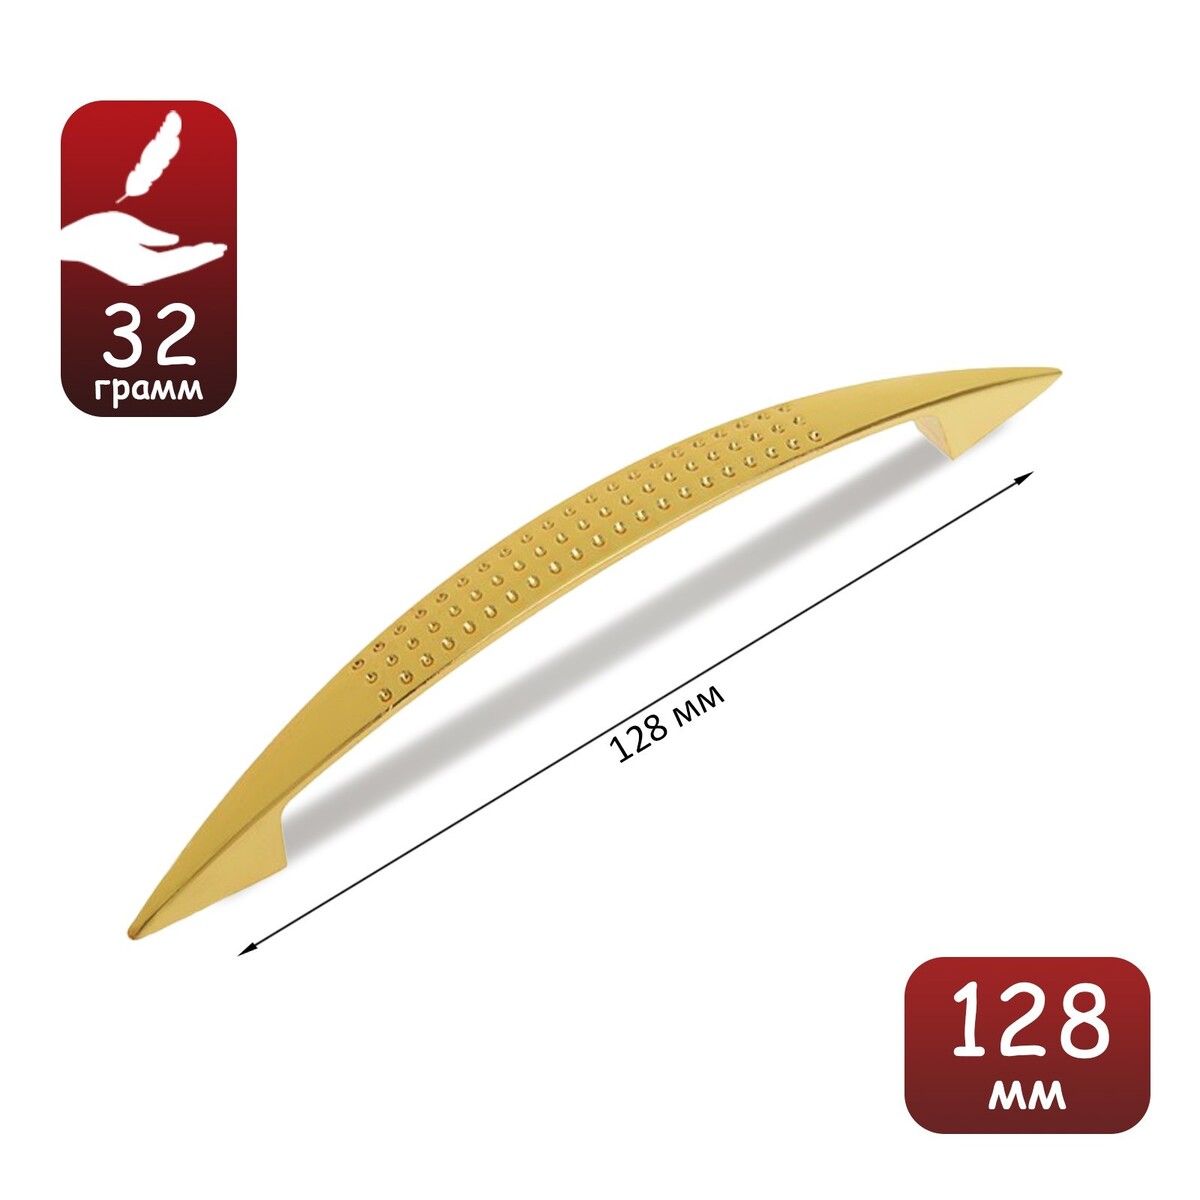 Ручка-скоба тундра standart, м/о 128 мм, цвет золото ручка скоба тундра тундра standart м о 128 мм золото